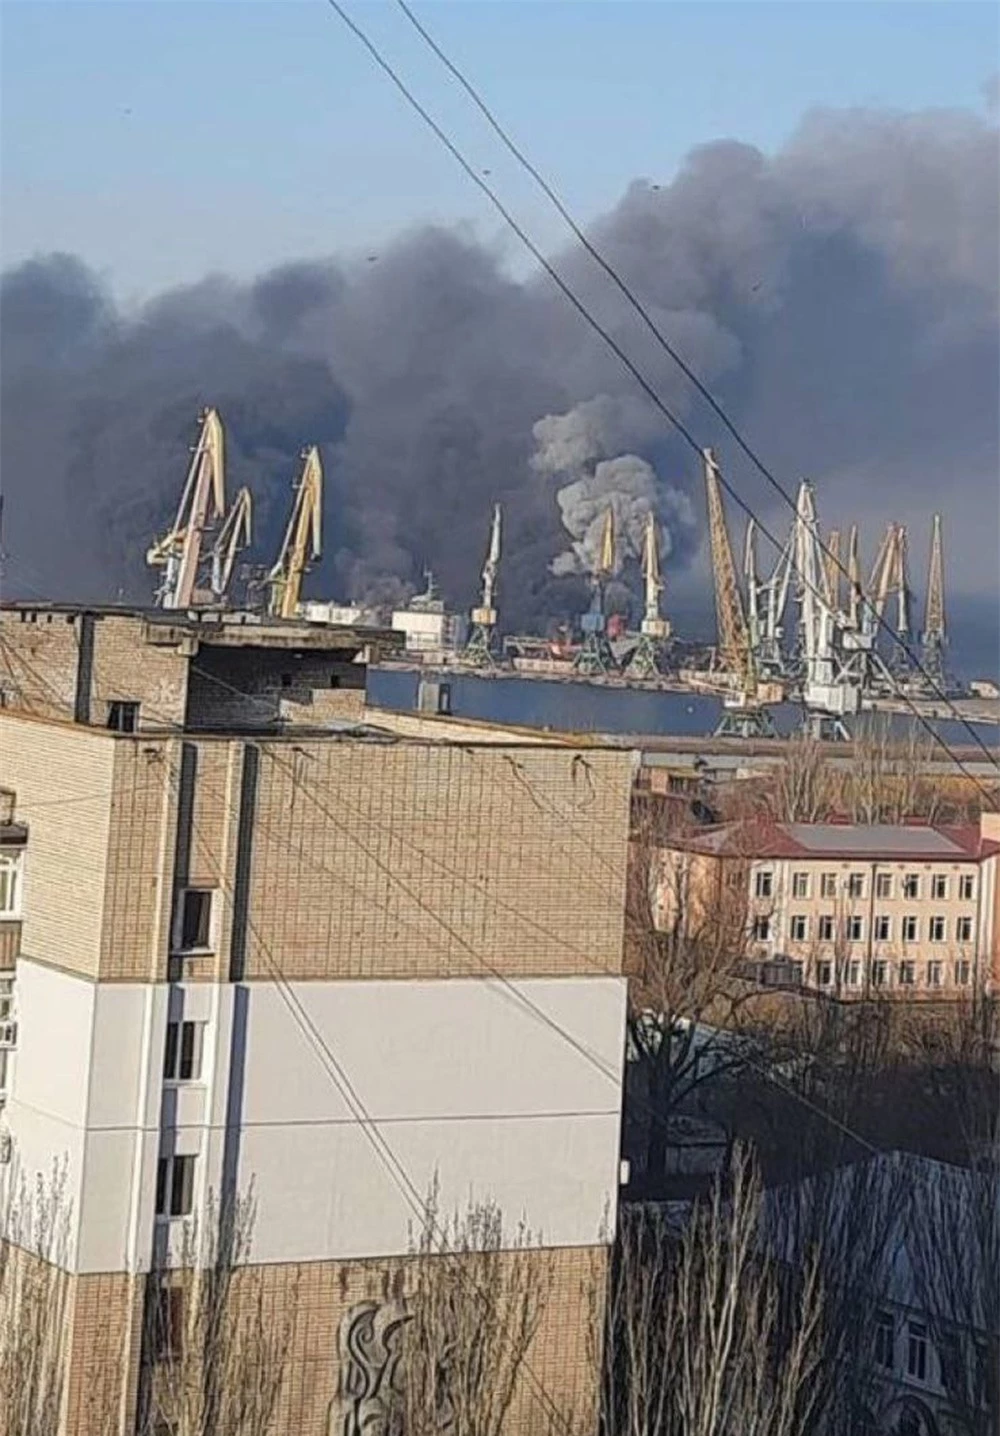 NÓNG: Nổ lớn ở cảng Berdyansk, lửa cháy dữ dội - Ukraine tuyên bố tàu chiến Nga bị phá hủy - Ảnh 2.